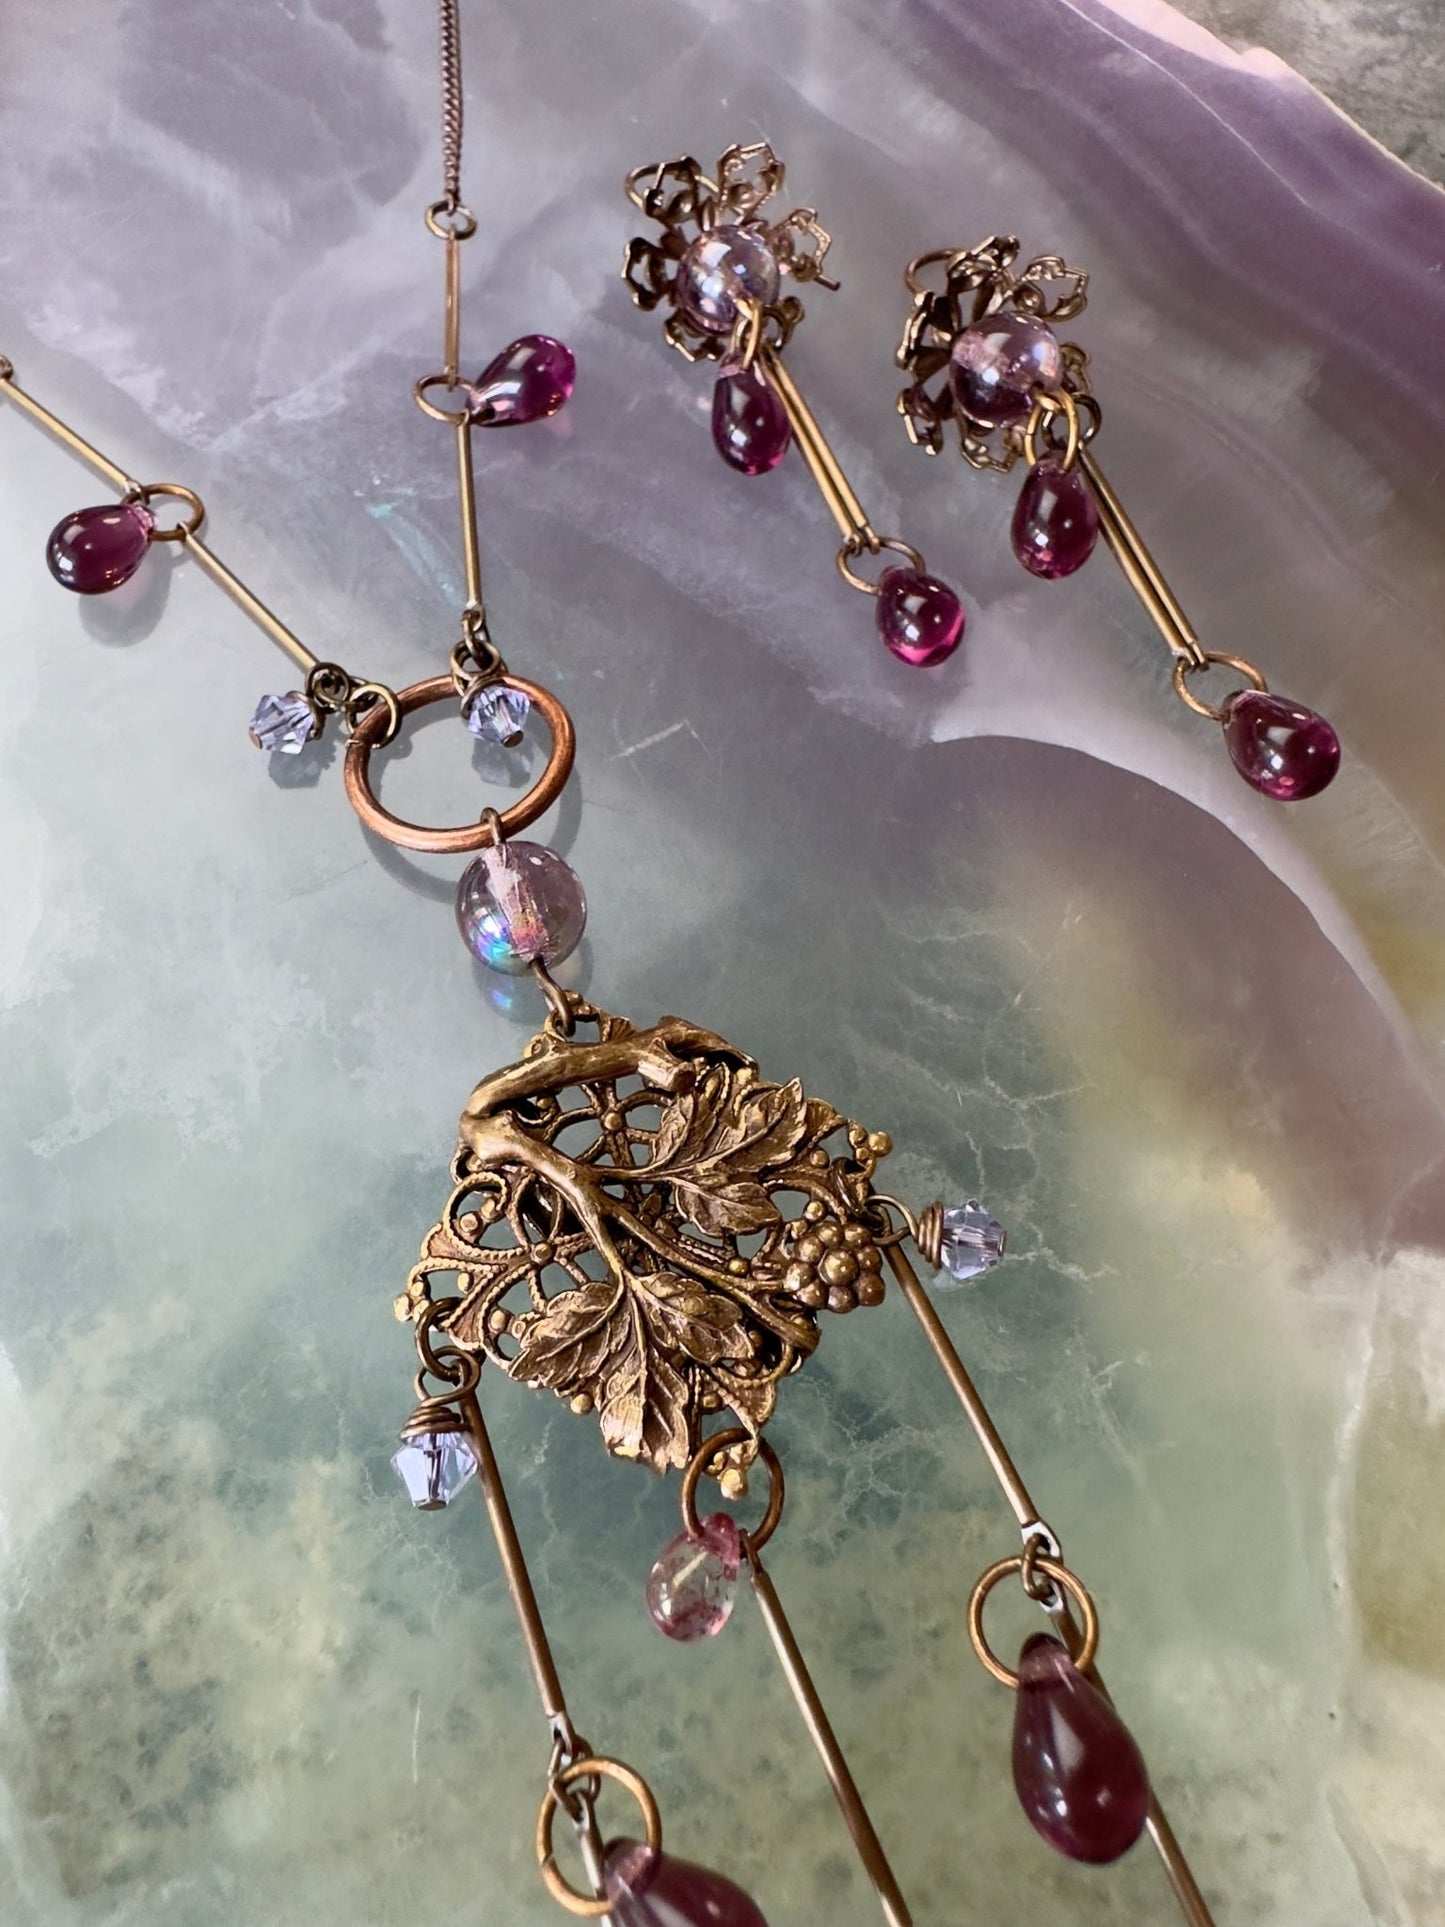 Wisteria Falls Necklace Earrings Kit - Vintaj Design - 5/22/24 - Vintaj Live Shop